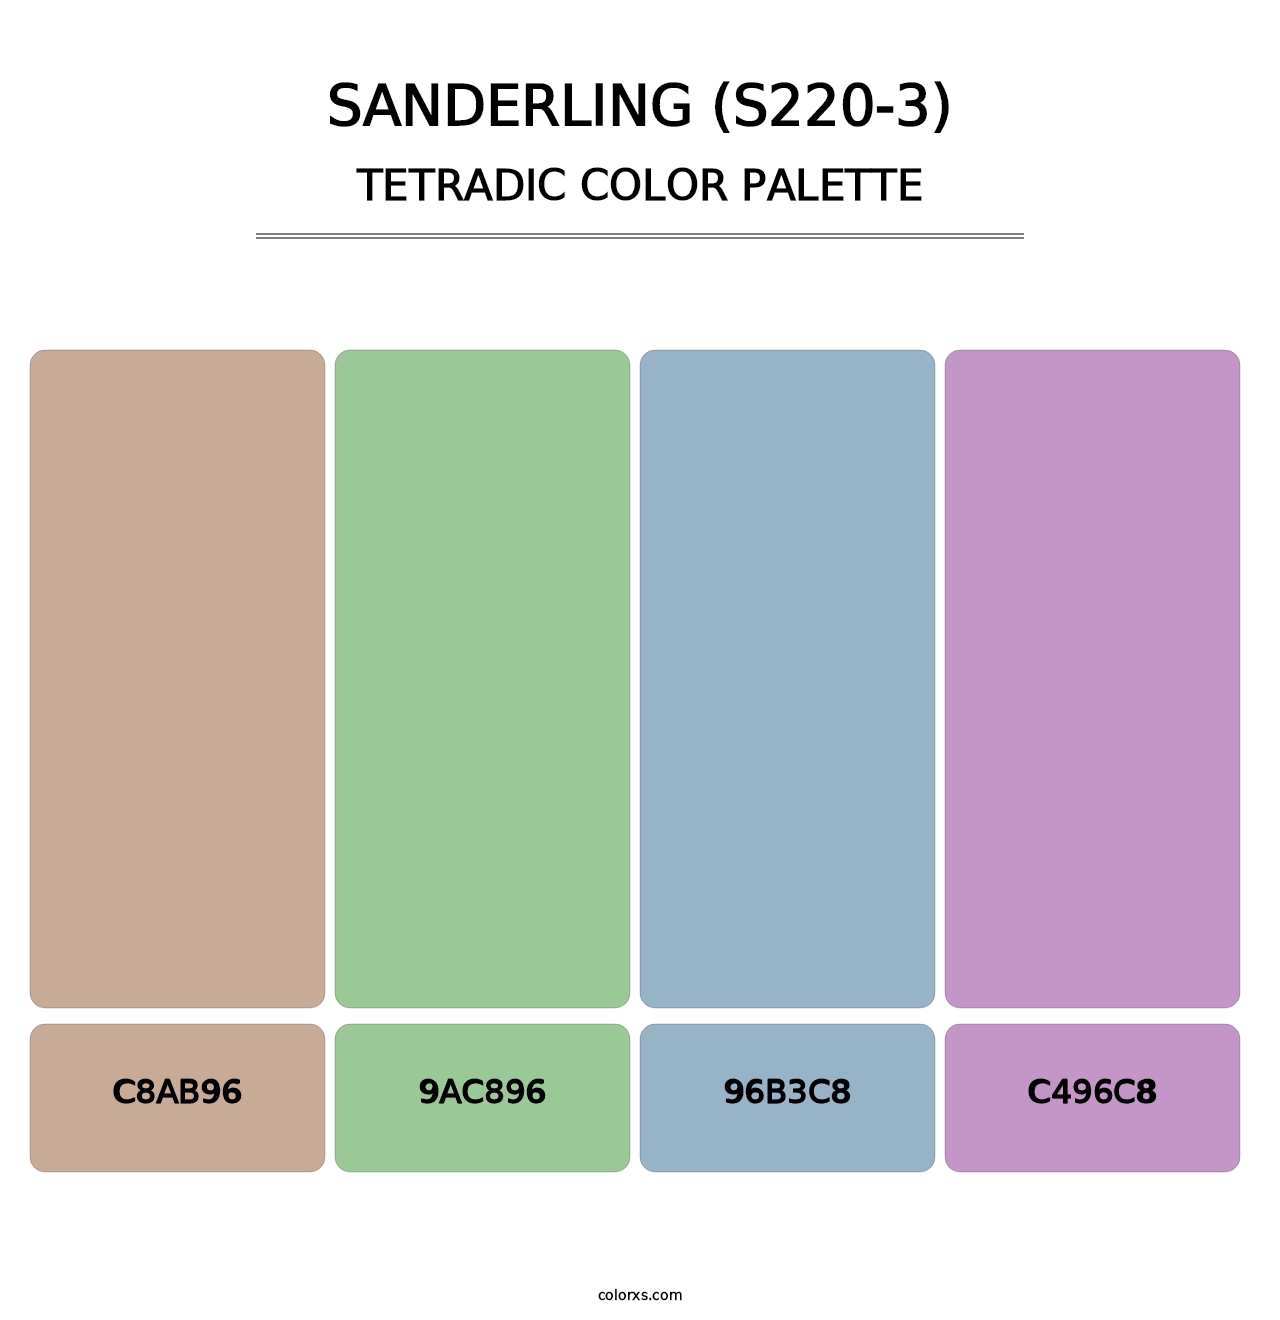 Sanderling (S220-3) - Tetradic Color Palette